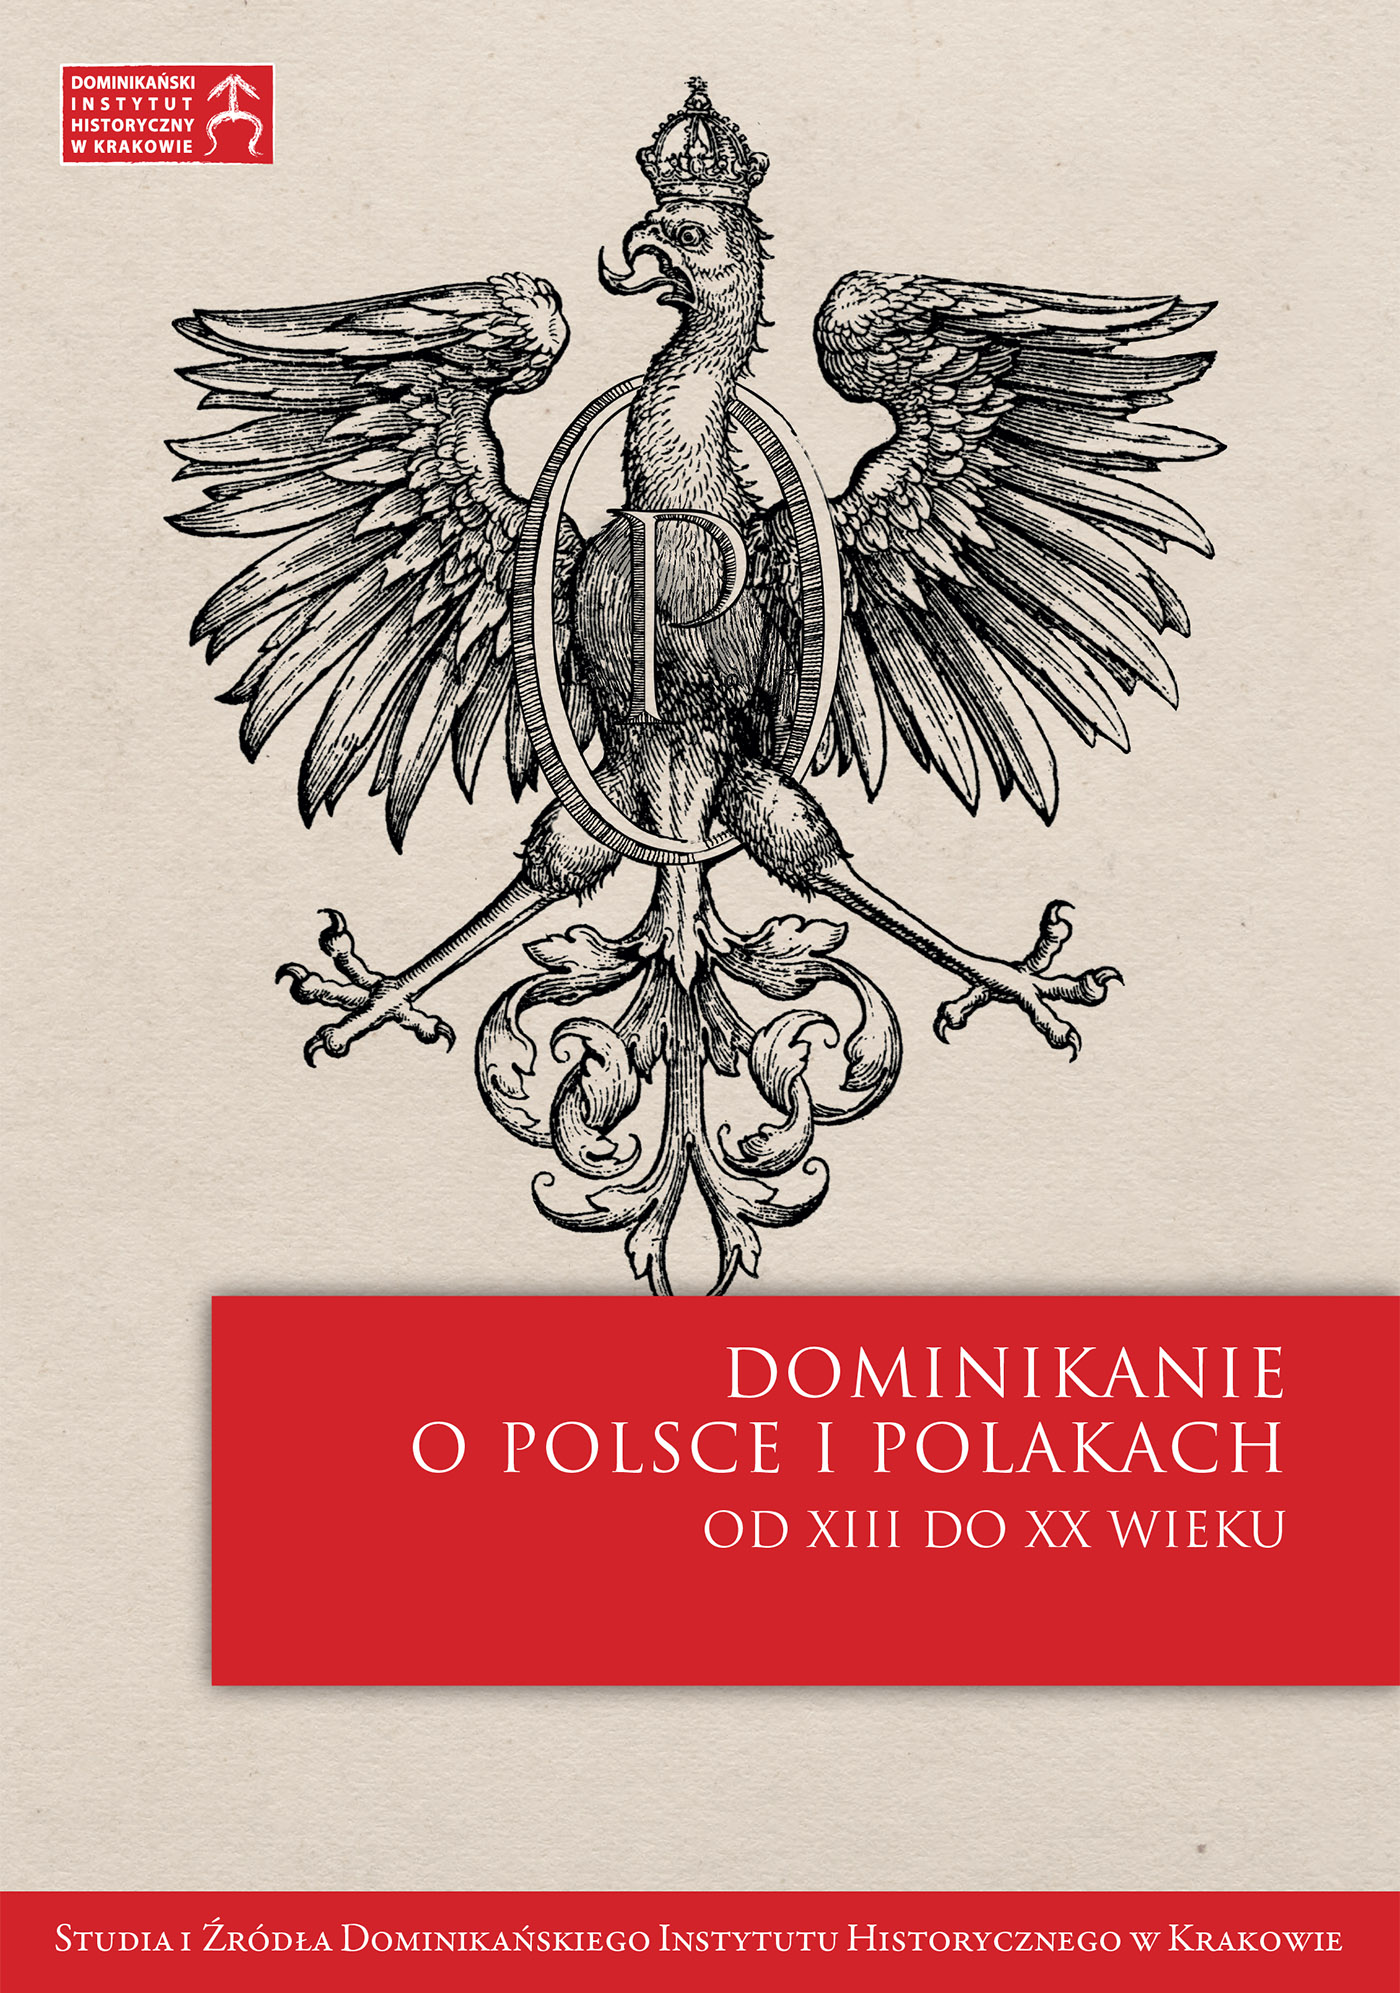 Okładka:Zmartwychwstania Polski, którego tak pragnął, doczekał się. Bonawentura Siemek OP († 1918) – młoda ofiara epidemii hiszpańskiej grypy 